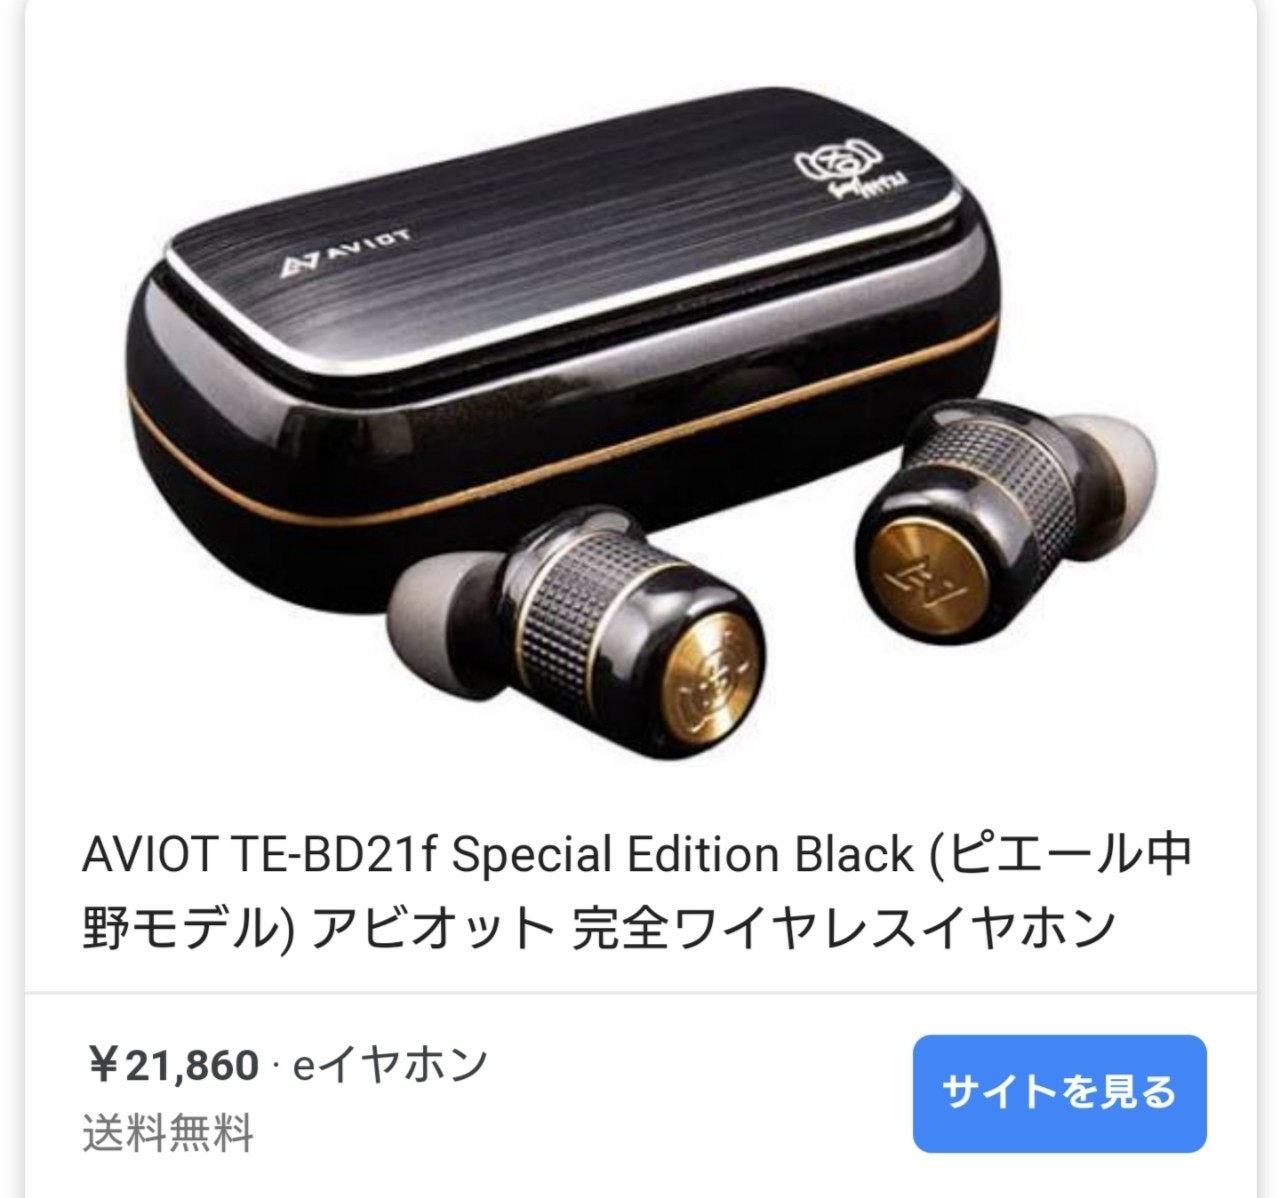 高い品質 ピヤホン Amazon.co.jp: AVIOT TE-BD21f-pnk Special オーディオ機器